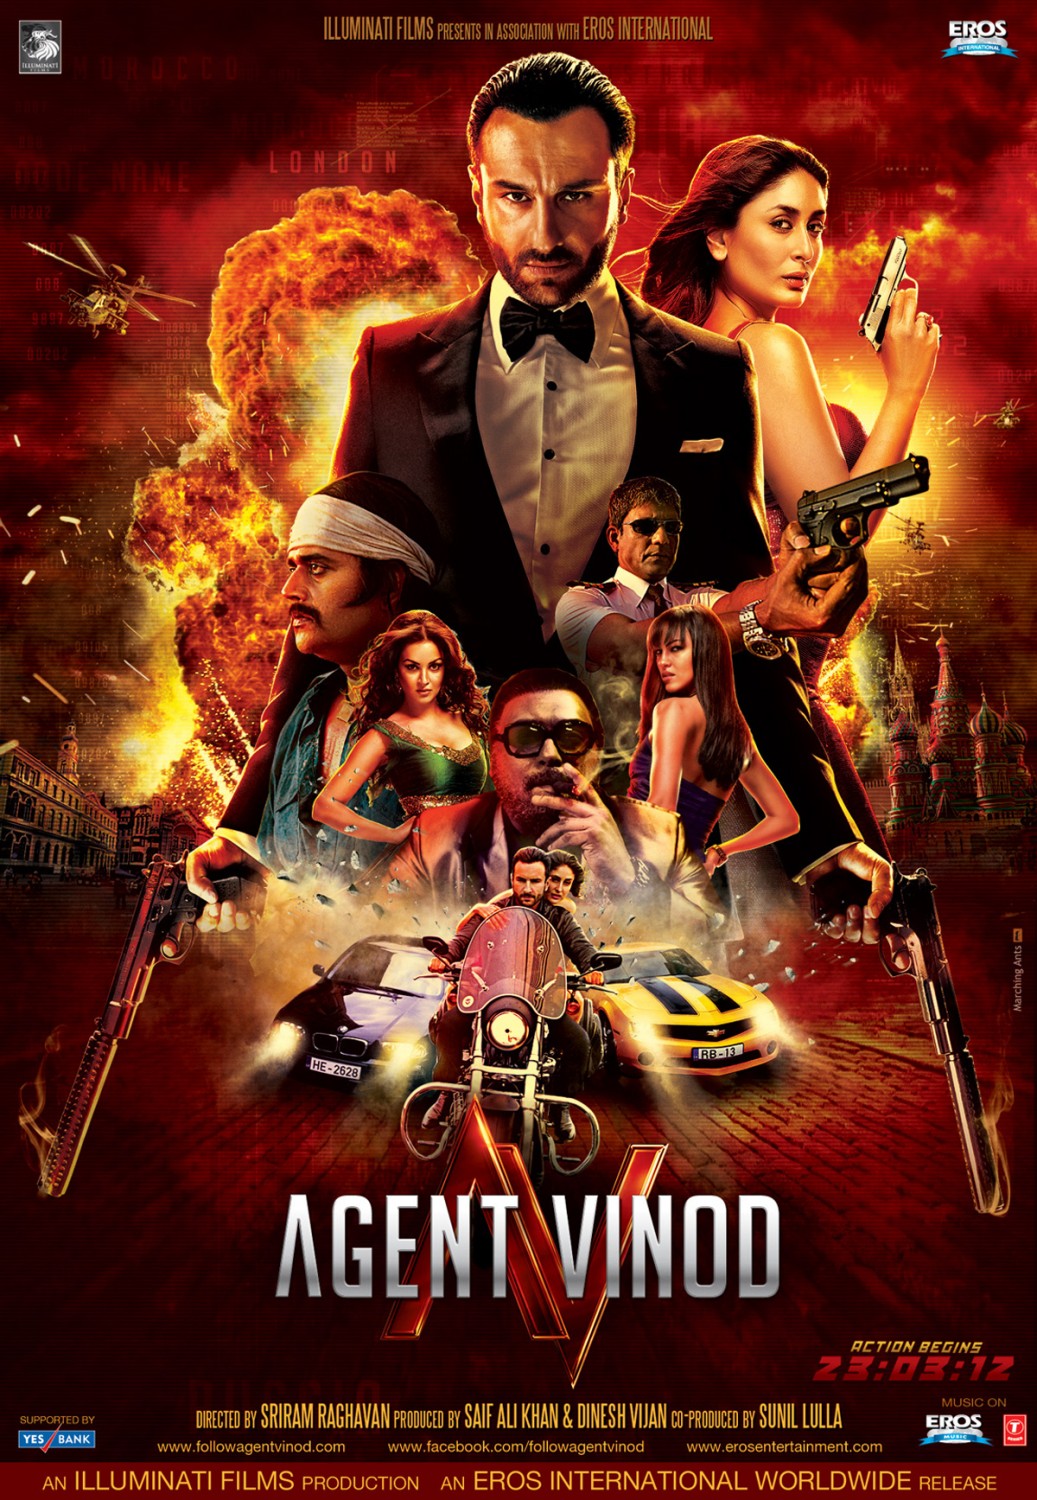 Agent vinod 2012)   full cast  crew   imdb